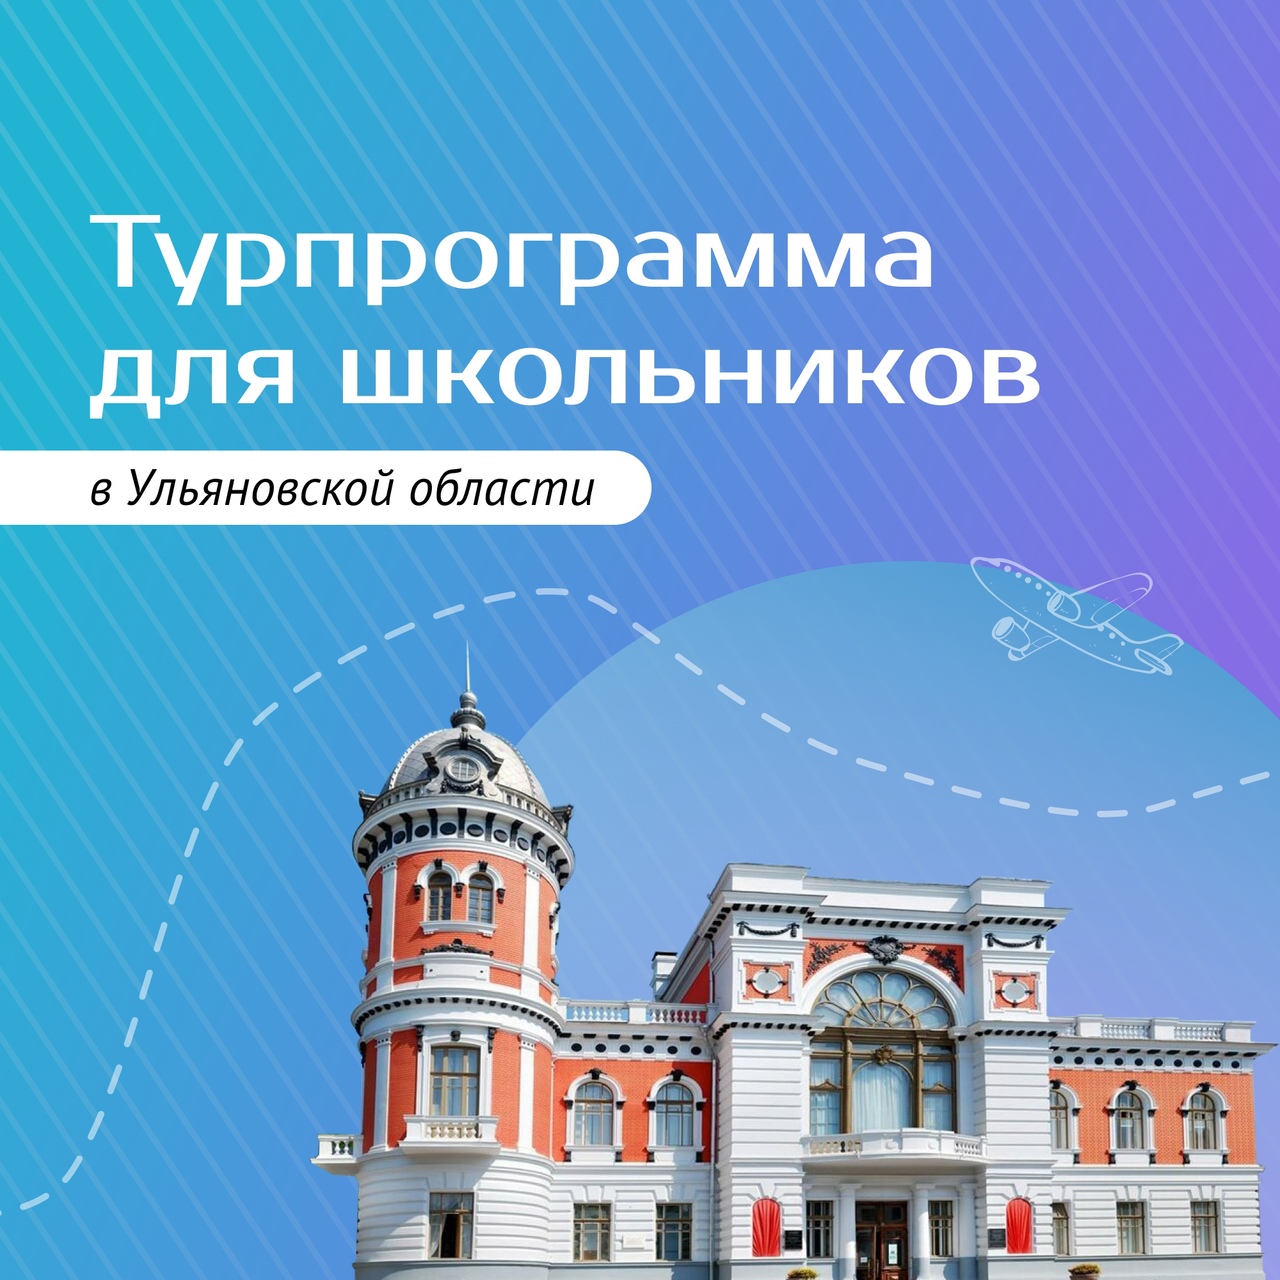 Ульяновские школьники смогут бесплатно ездить в мини-туры.